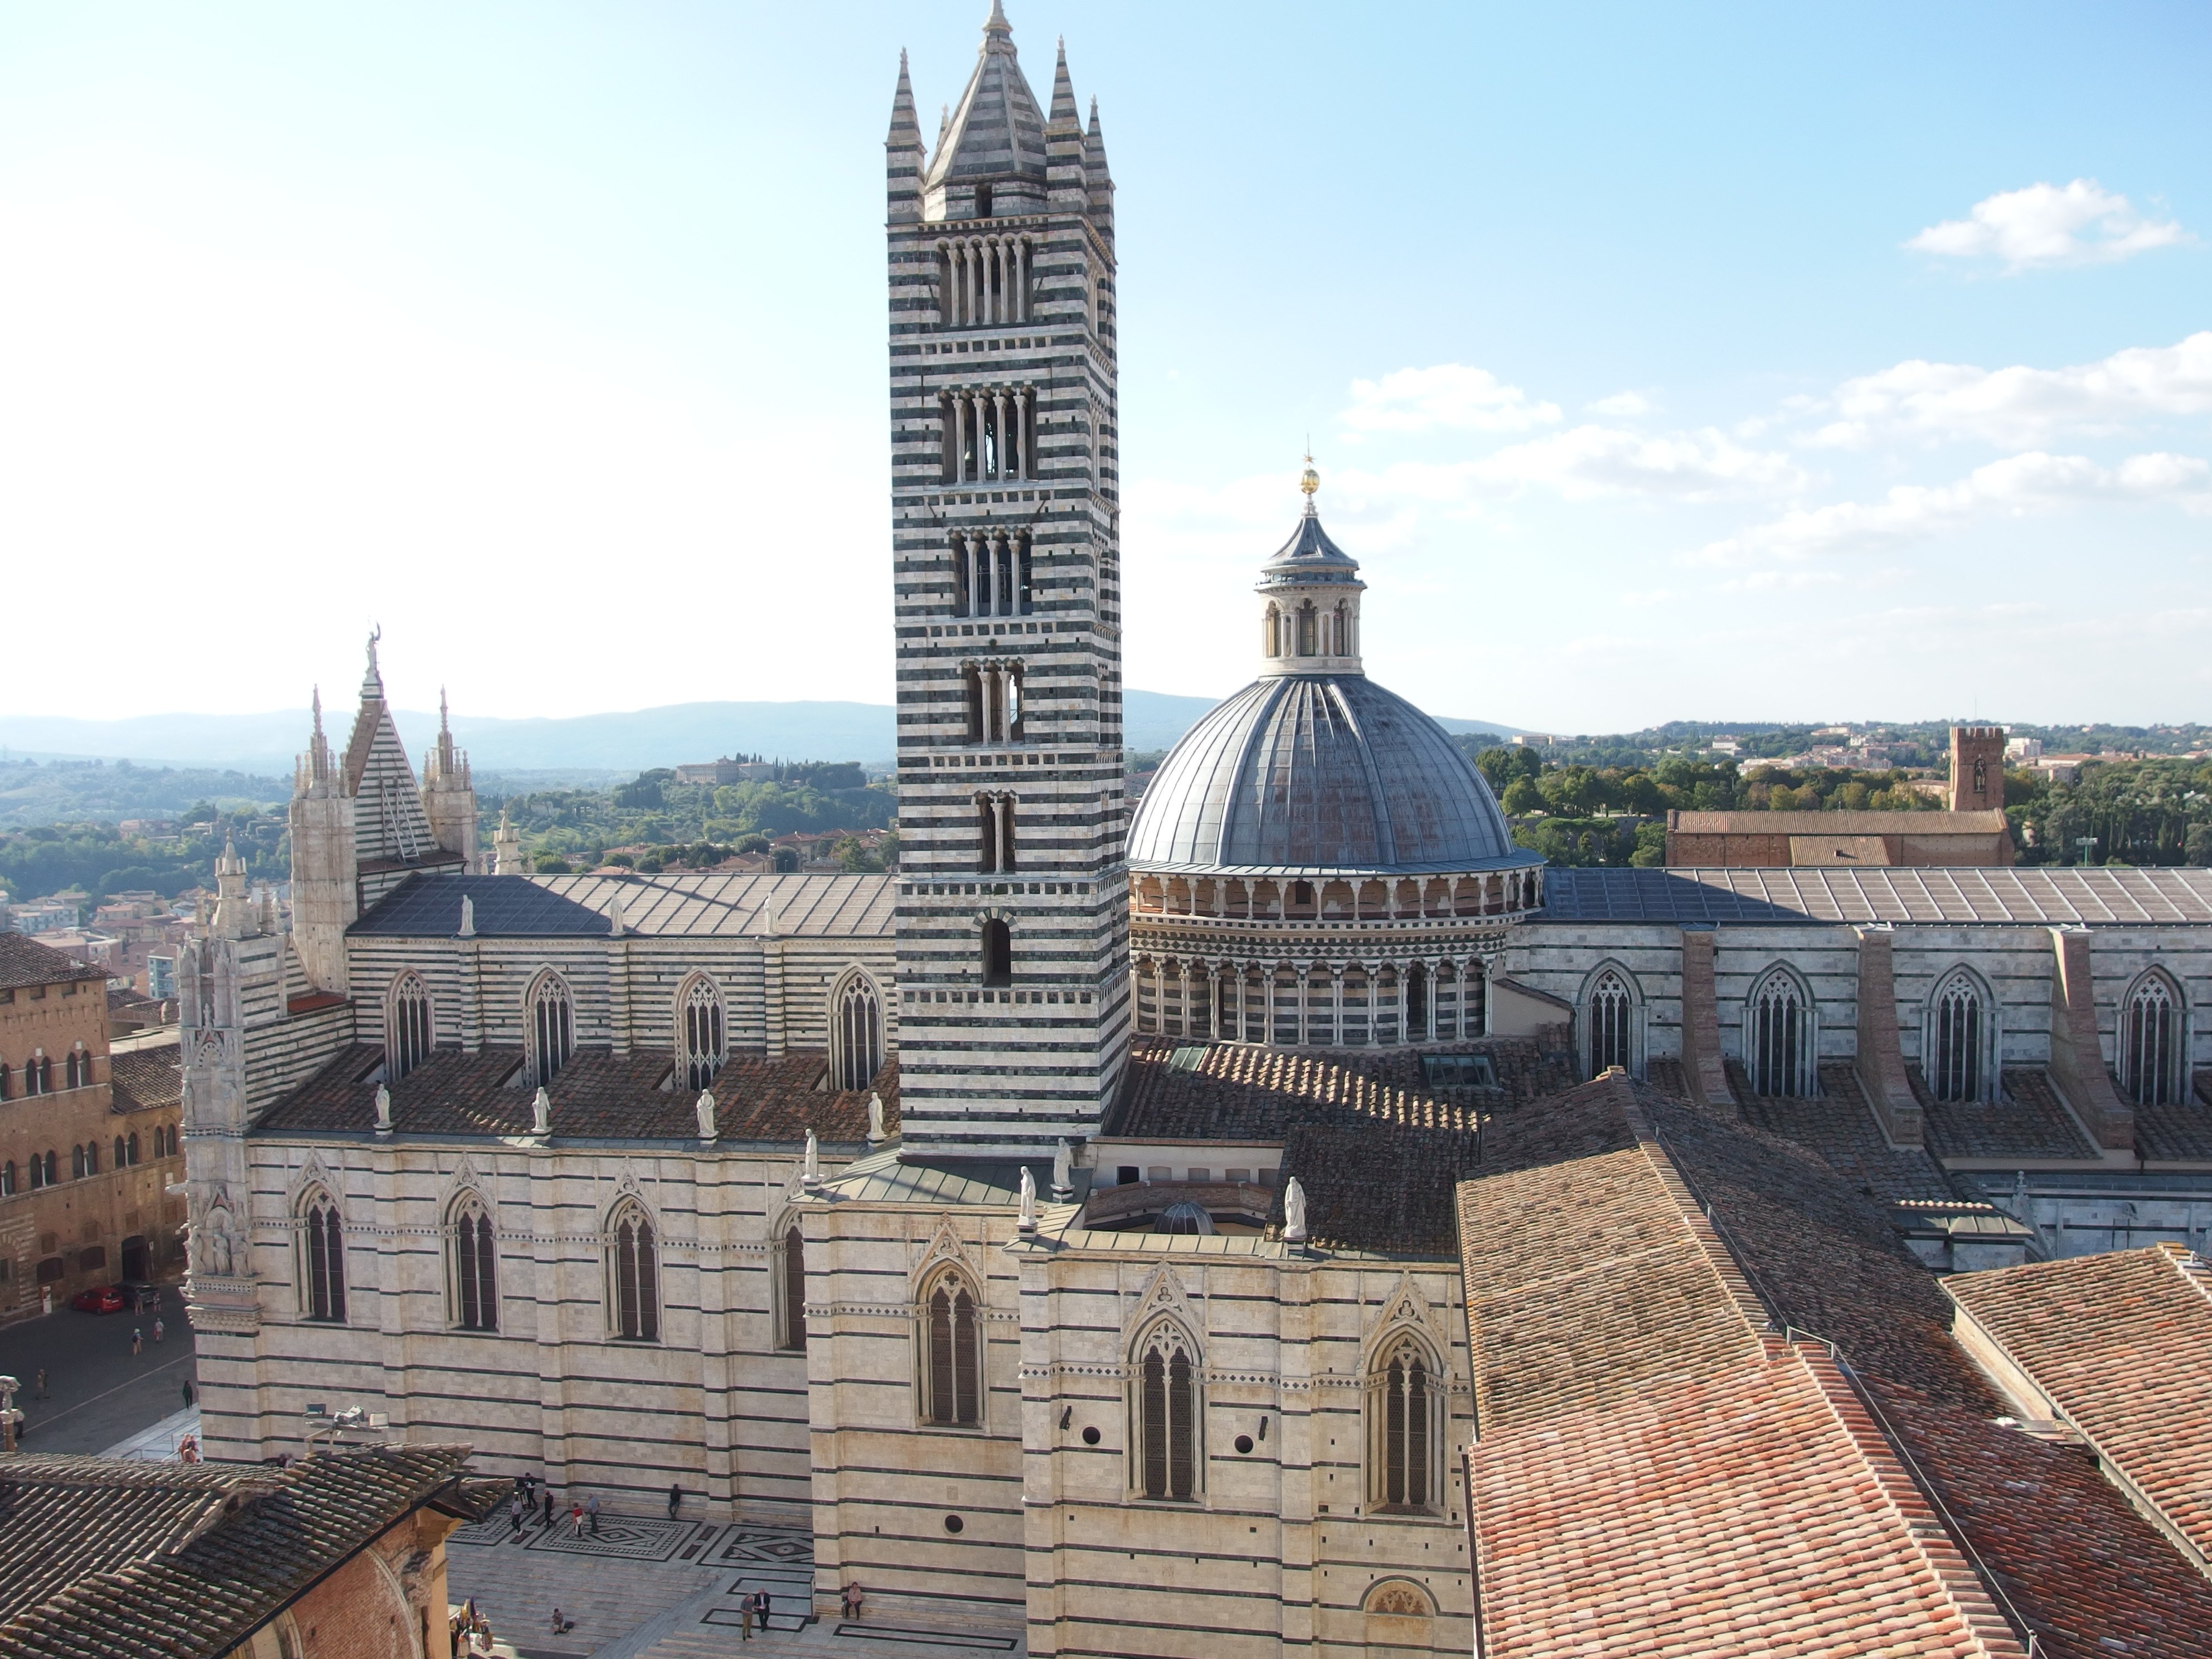 Siena's duomo campanile